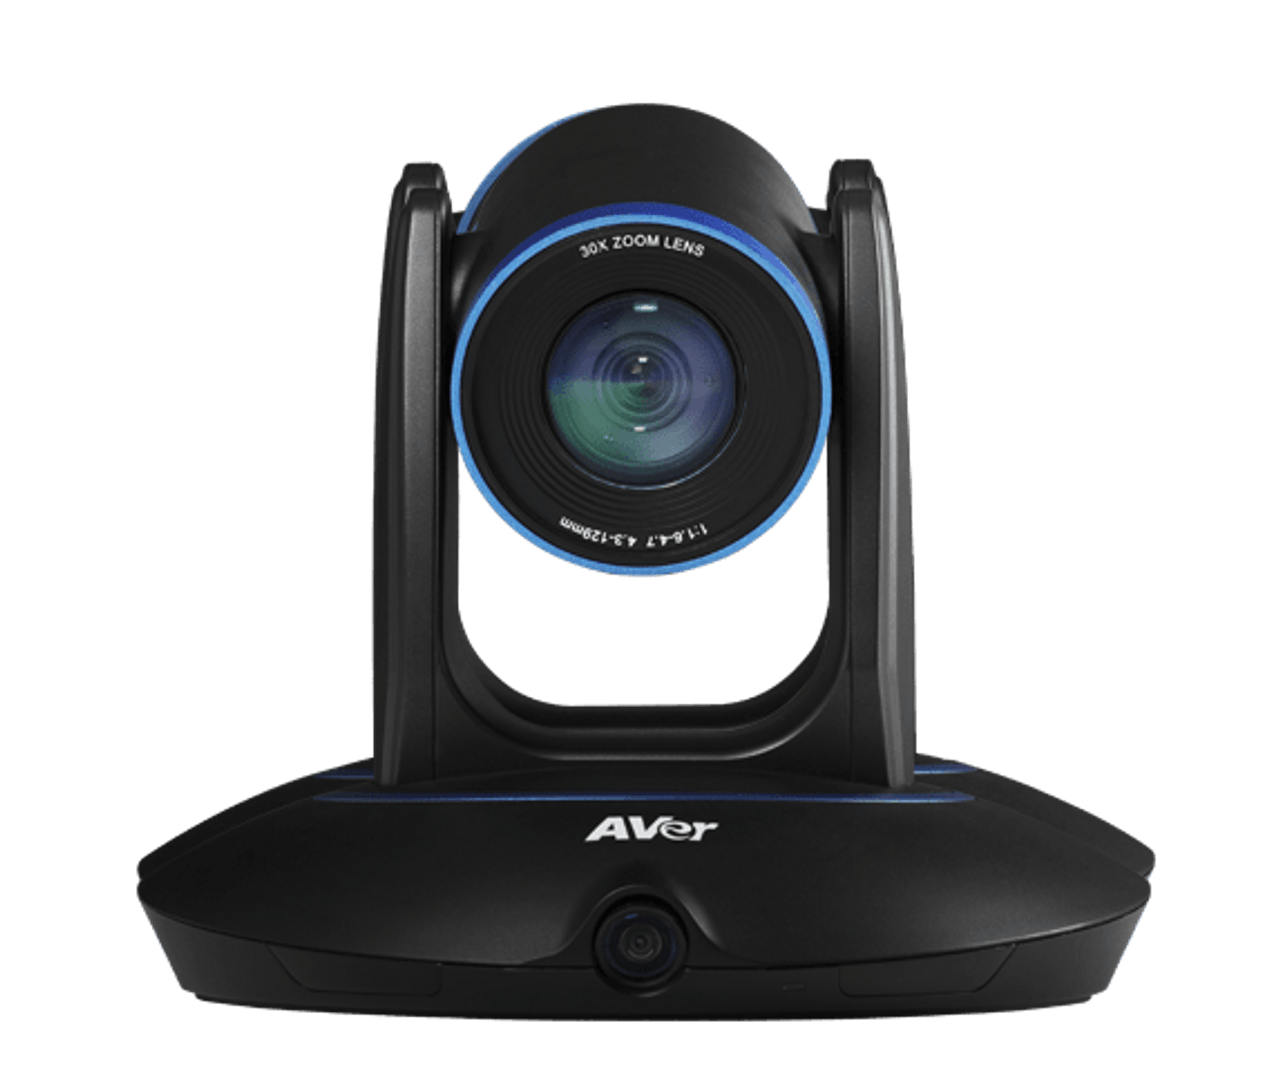 Aver PTC500+ Professional 30X Dual Lens PTZ Auto Tracking Camera